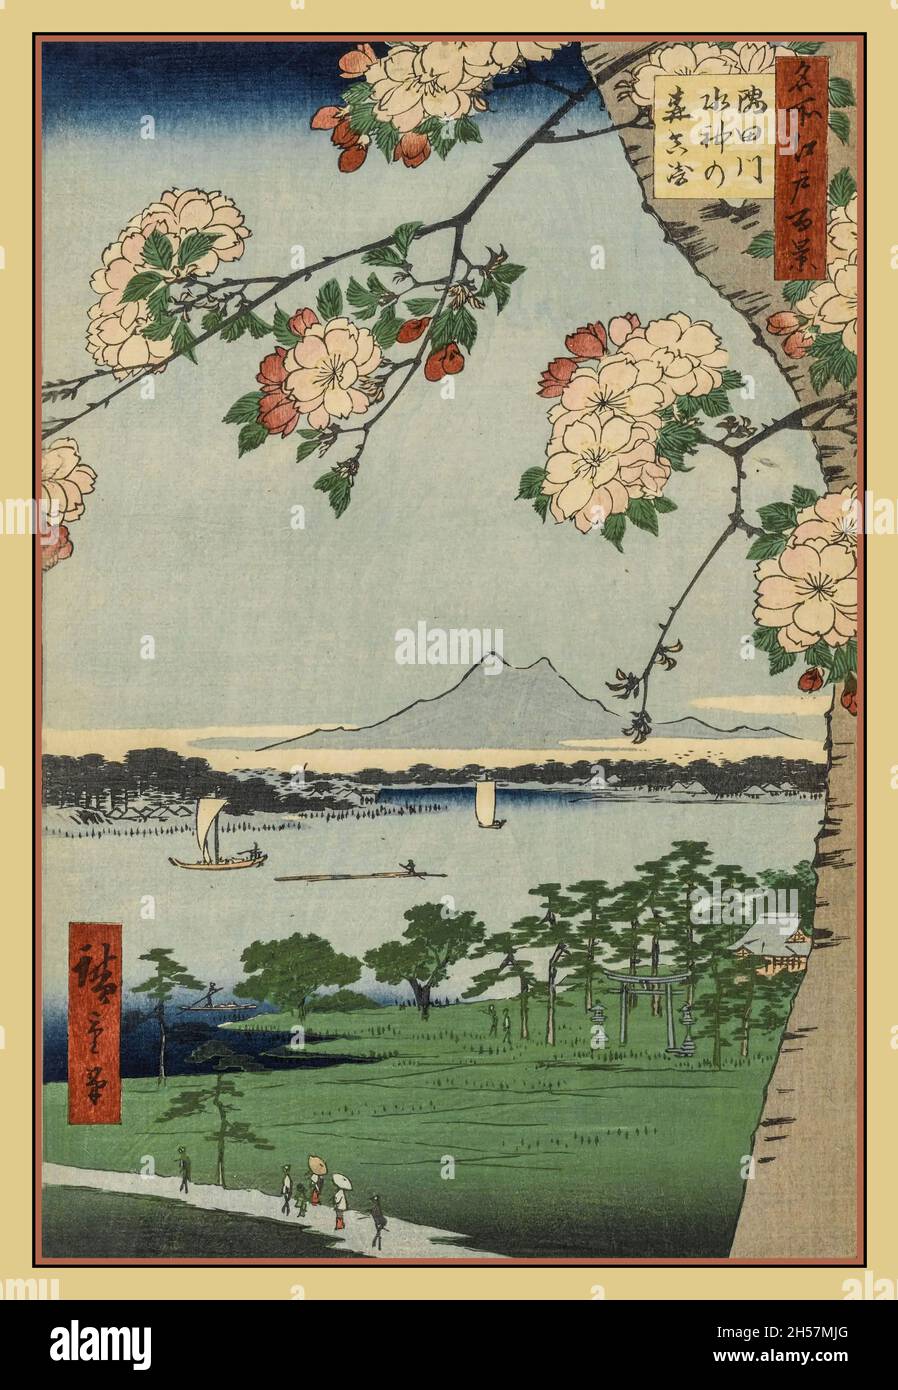 HIROSHIGE UKIYO-E ARTISTE 100 vues célèbres de l'Edo par le sanctuaire Hiroshige Suijin et Massaki sur le fleuve Sumida. Les gens au bas de l'imprimé sont sur le chemin du ferry Hashiba Utagawa Hiroshige, né Andō Hiroshige, était un artiste ukiyo-e japonais, considéré comme le dernier grand maître de cette tradition. Hiroshige est surtout connu pour sa série de paysages au format vertical, une centaine de vues célèbres d'Edo. Le sanctuaire de Suijin et Massaki sur le fleuve Sumida est le numéro 35 des 118 gravures sur bois qui constituent la série de Hiroshige une centaine de vues célèbres d'Edo. Banque D'Images